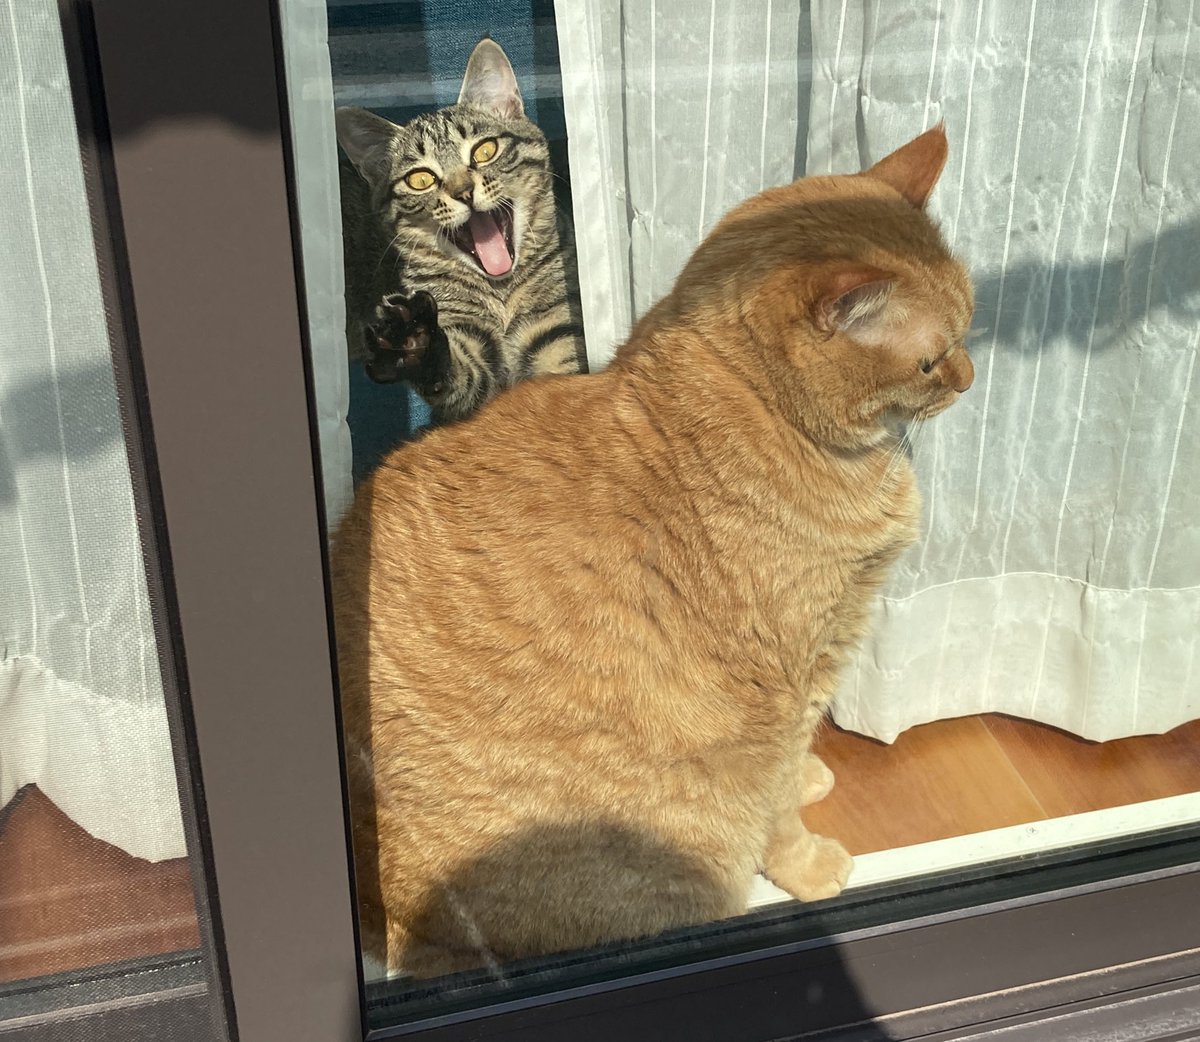 ここに来て最高に笑えた一枚が撮れた　#猫　#猫のいる暮らし　#デカ猫　#子猫　＃煽ってるように見える https://t.co/0pH4ss8j9n